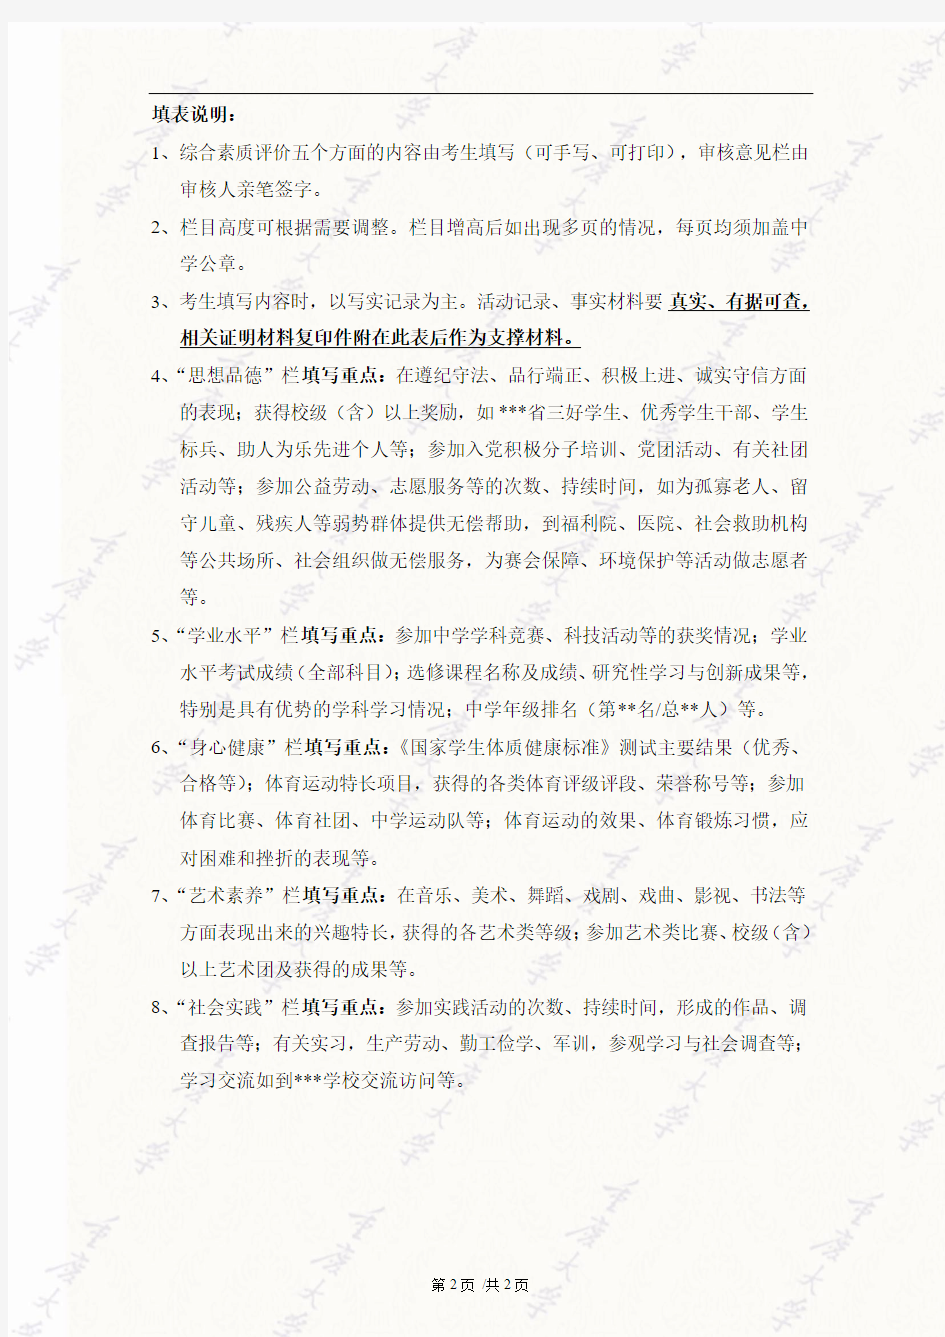 重庆大学自主招生综合素质评价表